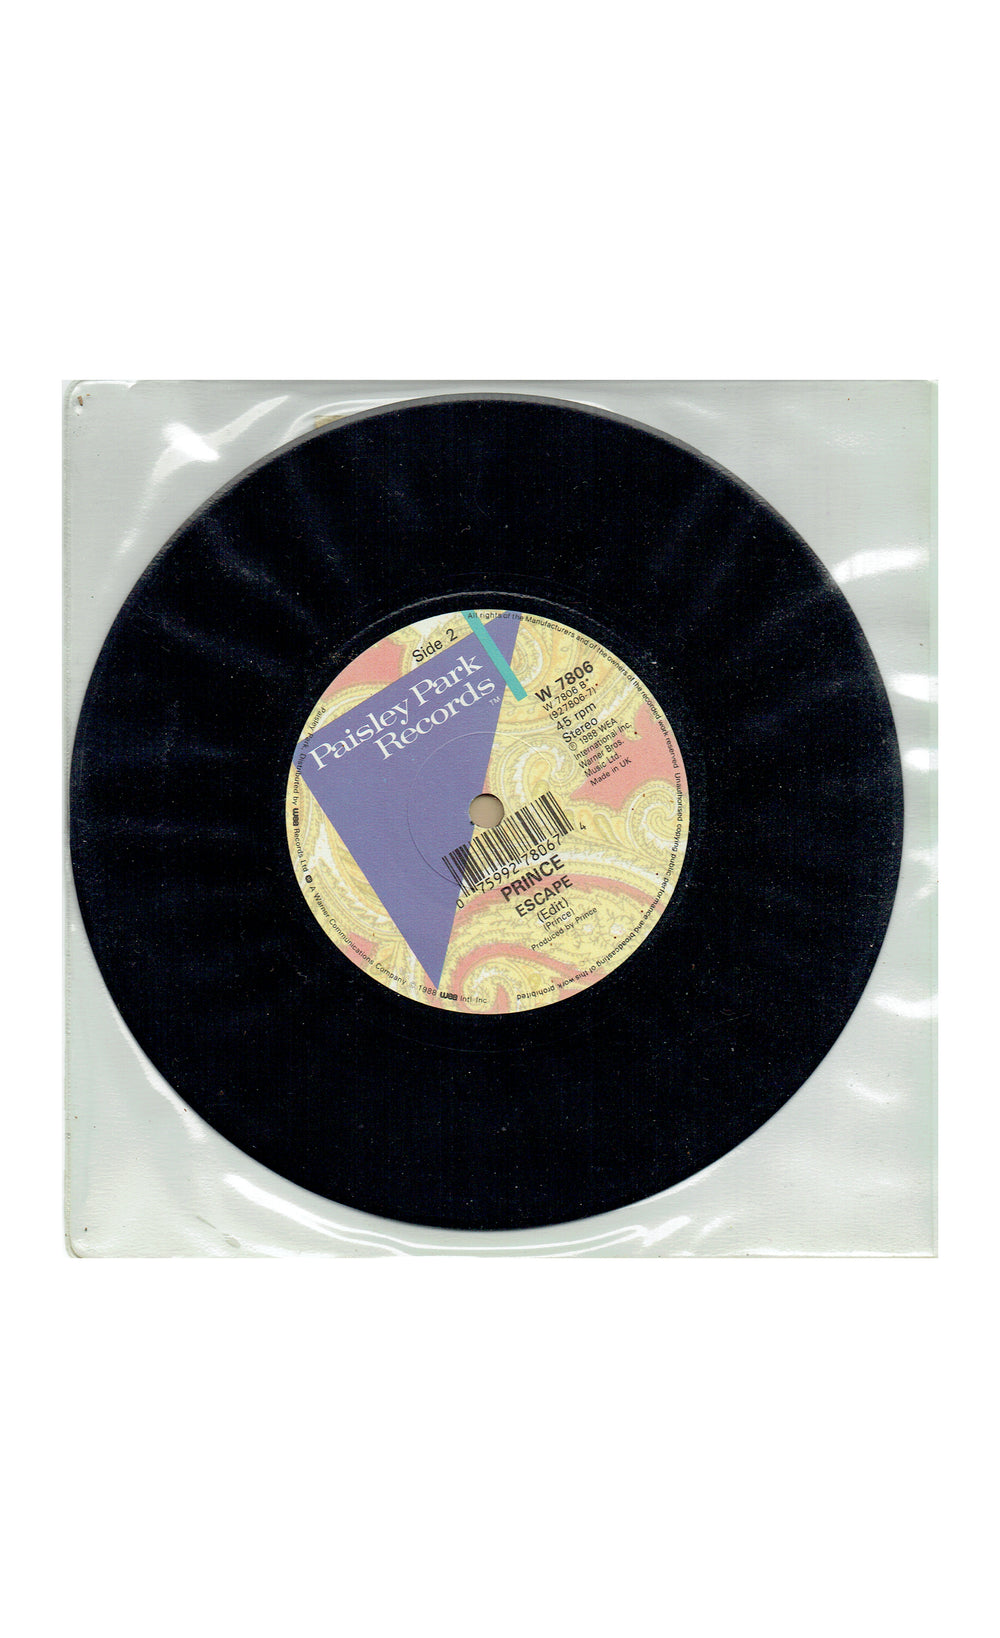 Prince – Glam Slam Escape  Vinyl 7" UK Preloved: 1988